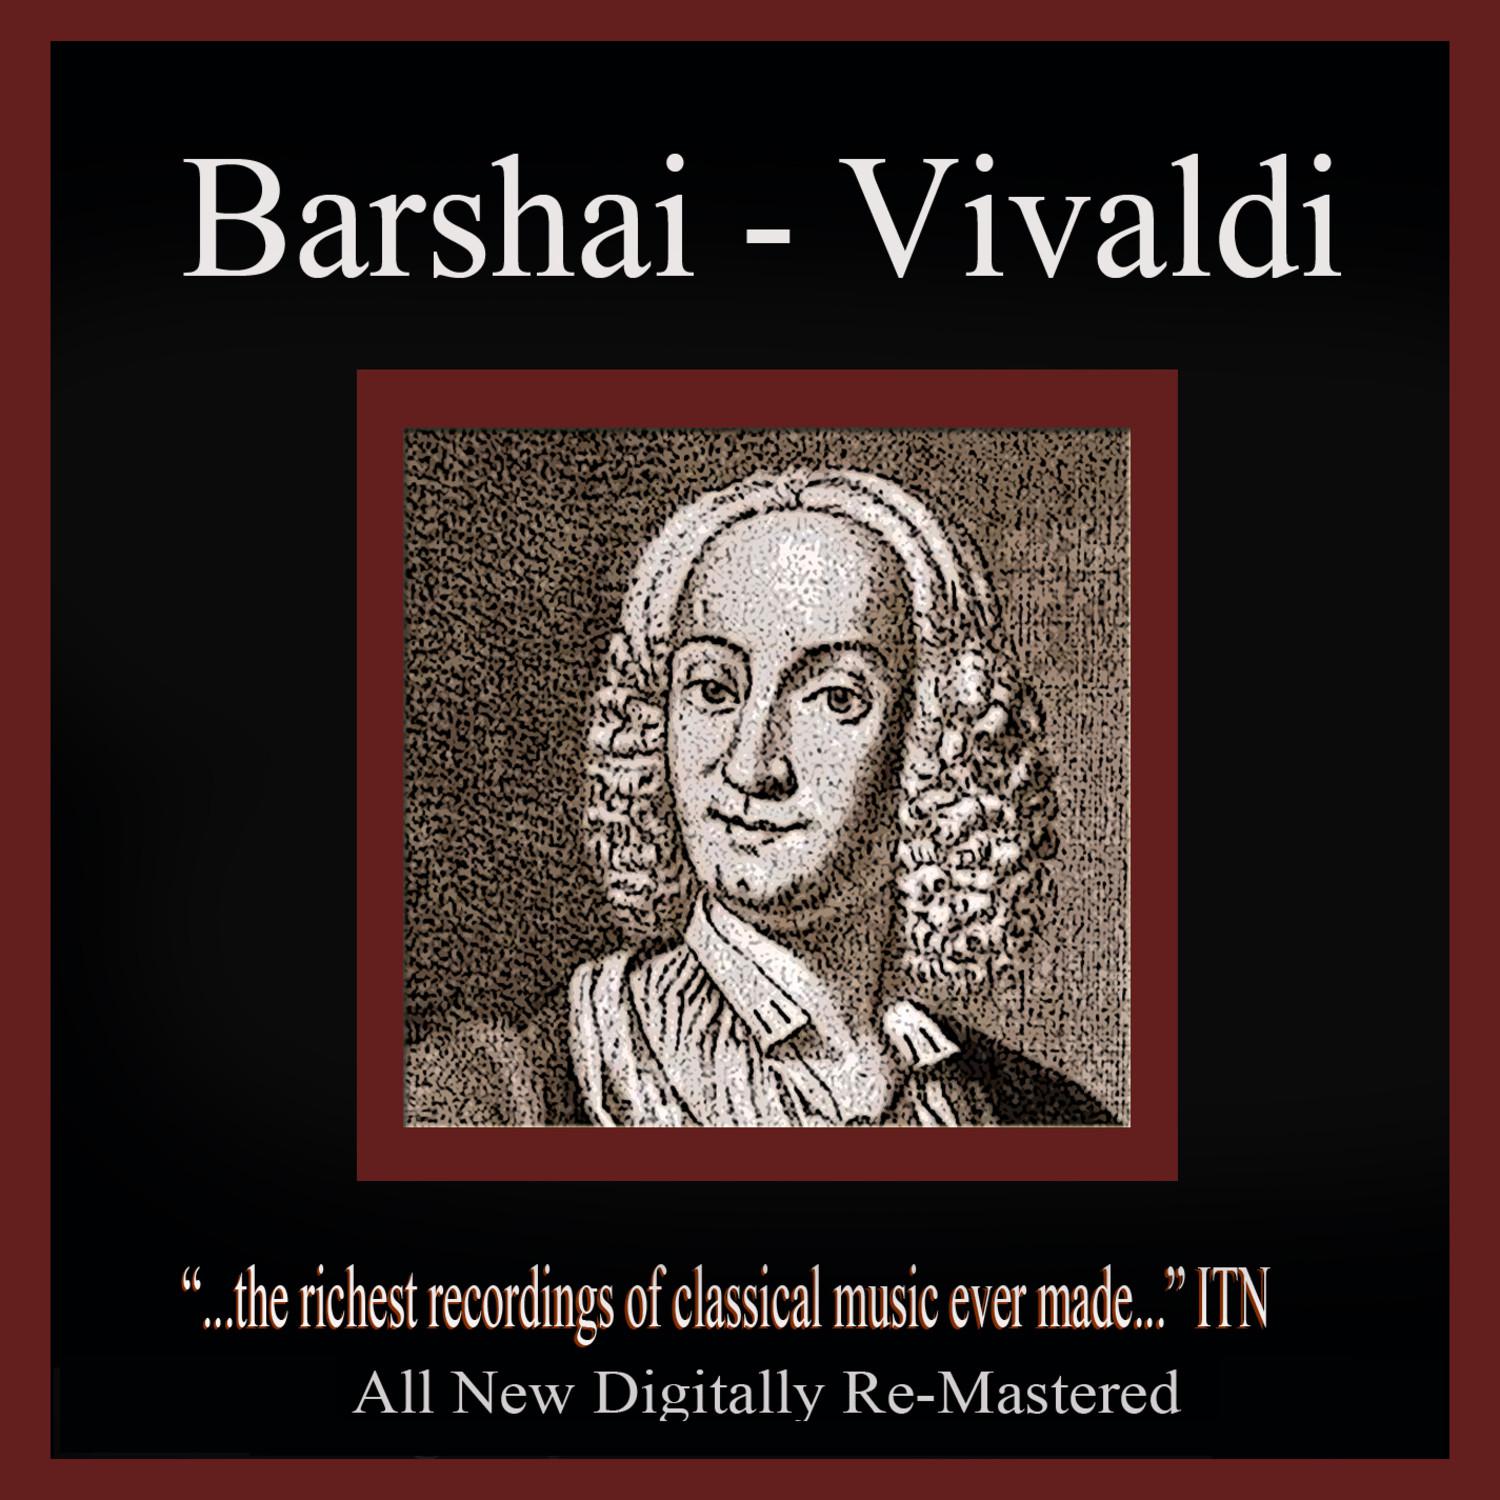 Barshai - Vivaldi